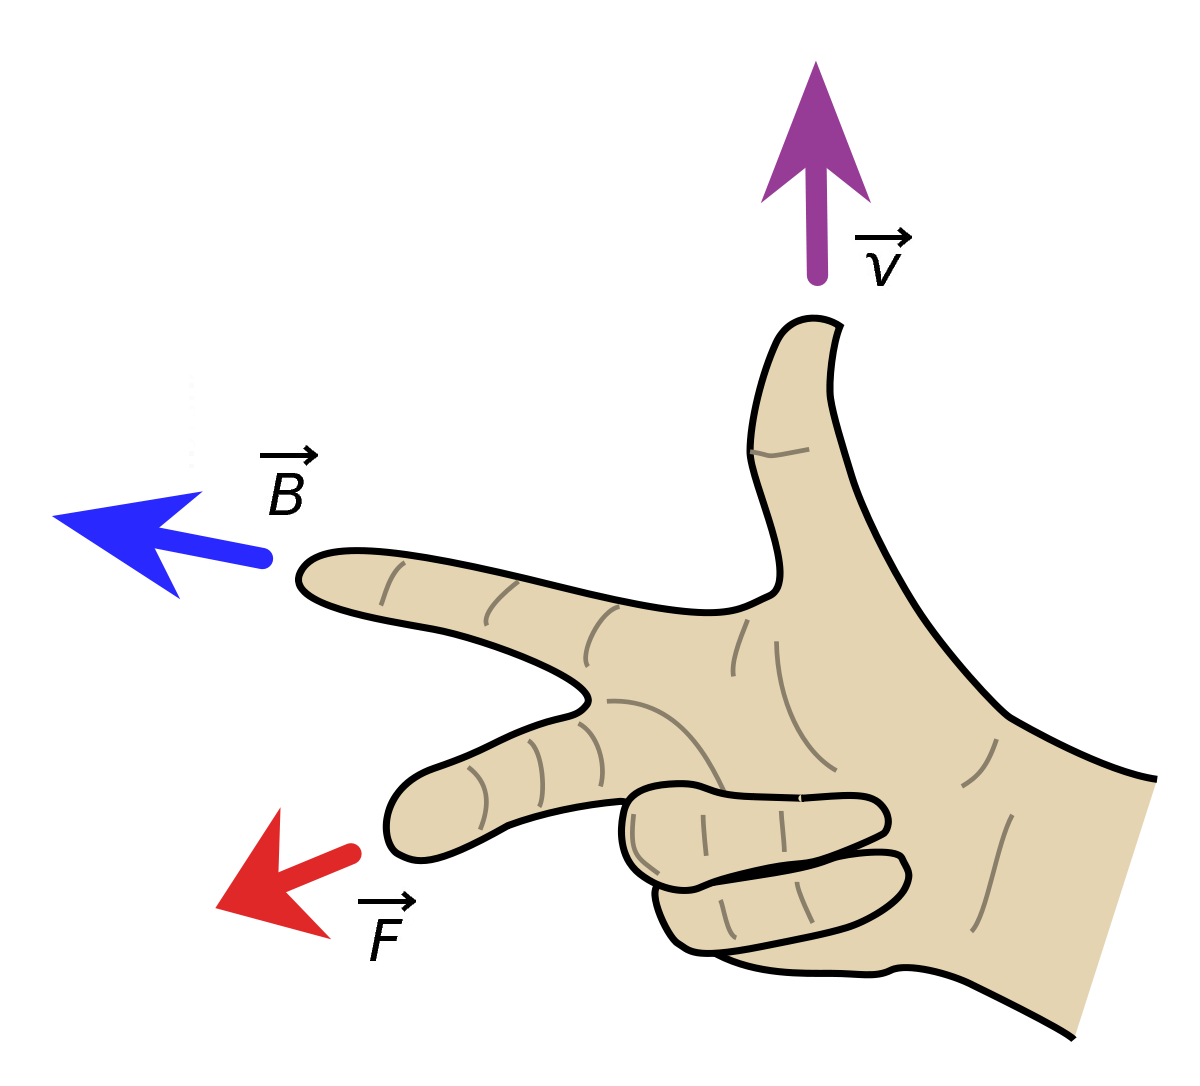 Forza di Lorentz regola della mano destra per determinare la direzione della forza F